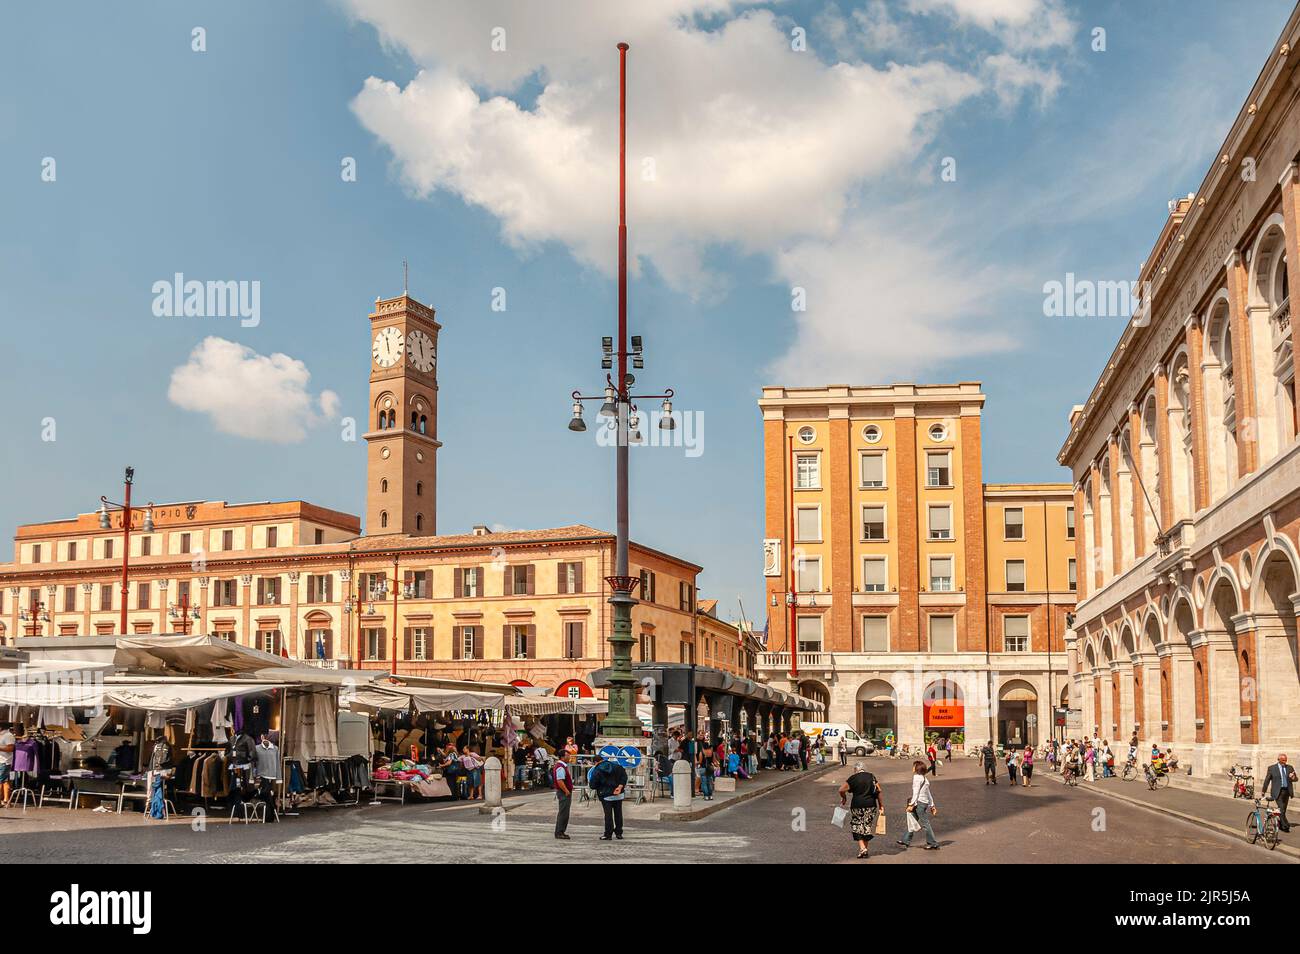 Market at the Piazza Aurelio Saffi in Forli, Emilia Romagna, Italy Stock Photo